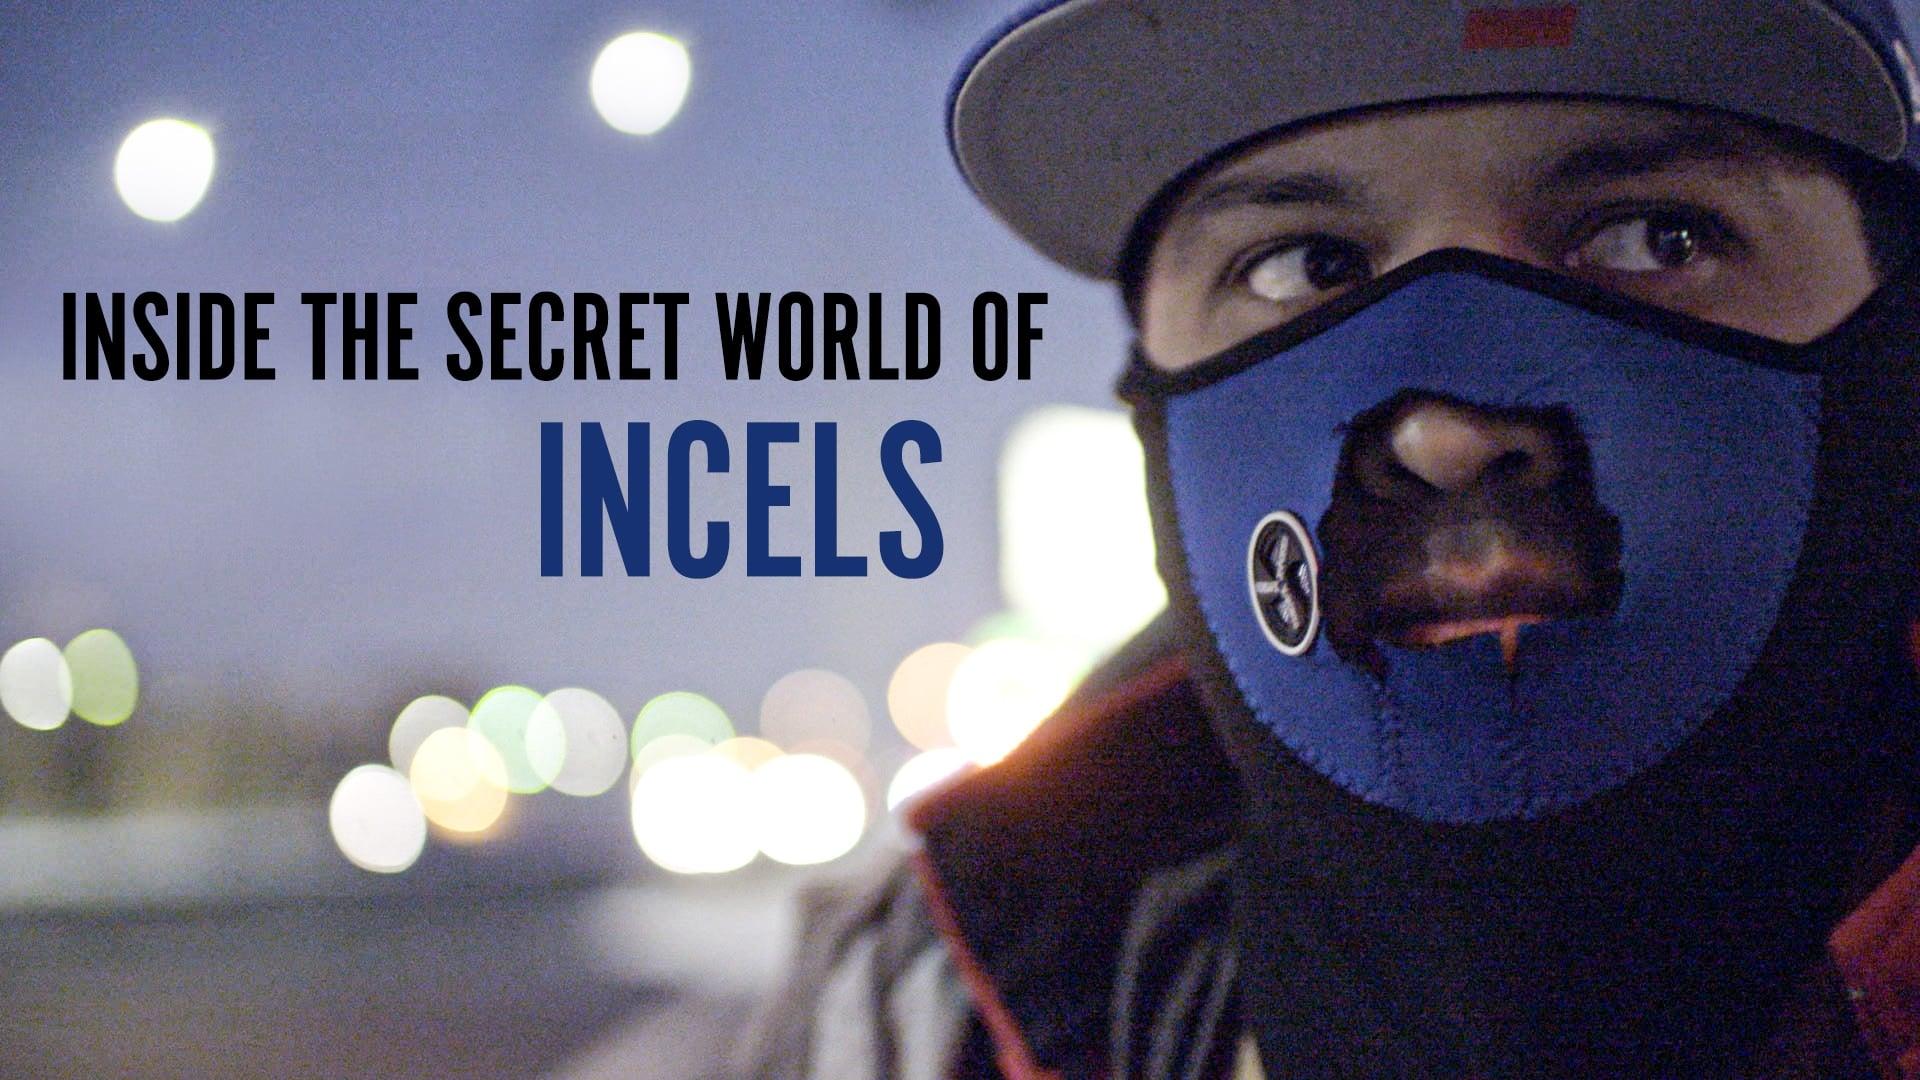 Inside The Secret World of Incels backdrop